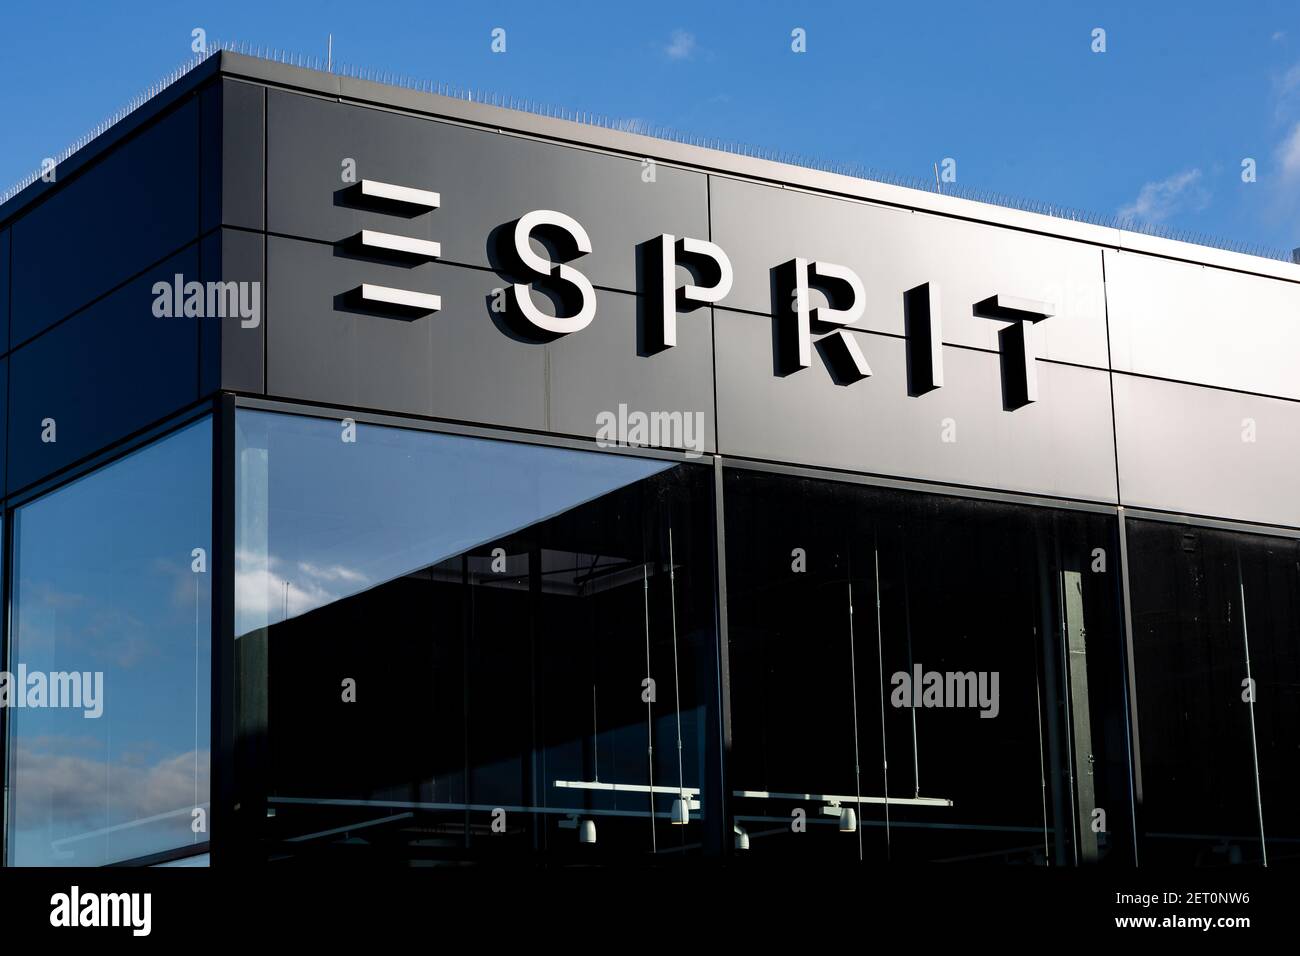 Esprit logo brand name -Fotos und -Bildmaterial in hoher Auflösung – Alamy